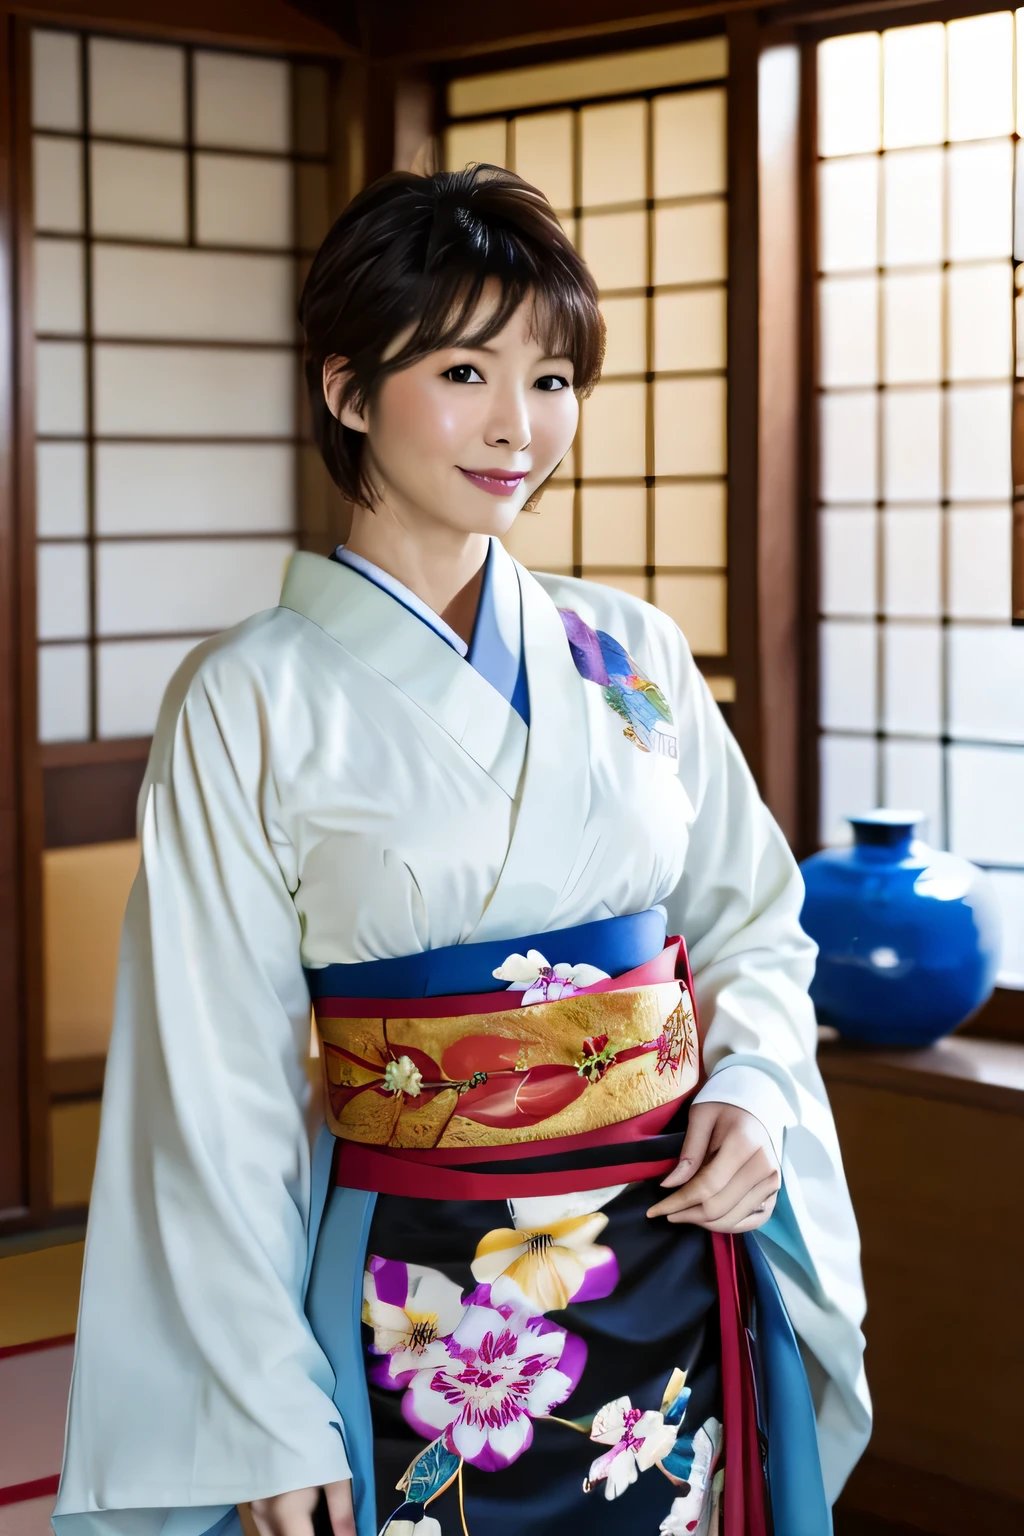 высшее качество, шедевр, сверхвысокое разрешение, (реалистичный:1.4), Необработанное фото, Очень подробно, идеальная анатомия, ковбойский выстрел, верхняя талия, смотрю на зрителя, в японской комнате, носить роскошное кимоно,, Детализированные очень красивые черные короткие волосы, Детализированное и роскошное кимоно, Специальный японский номер, Detailed and very beautiful реалистичный skin,красивая зрелая женщина,Без макияжа,